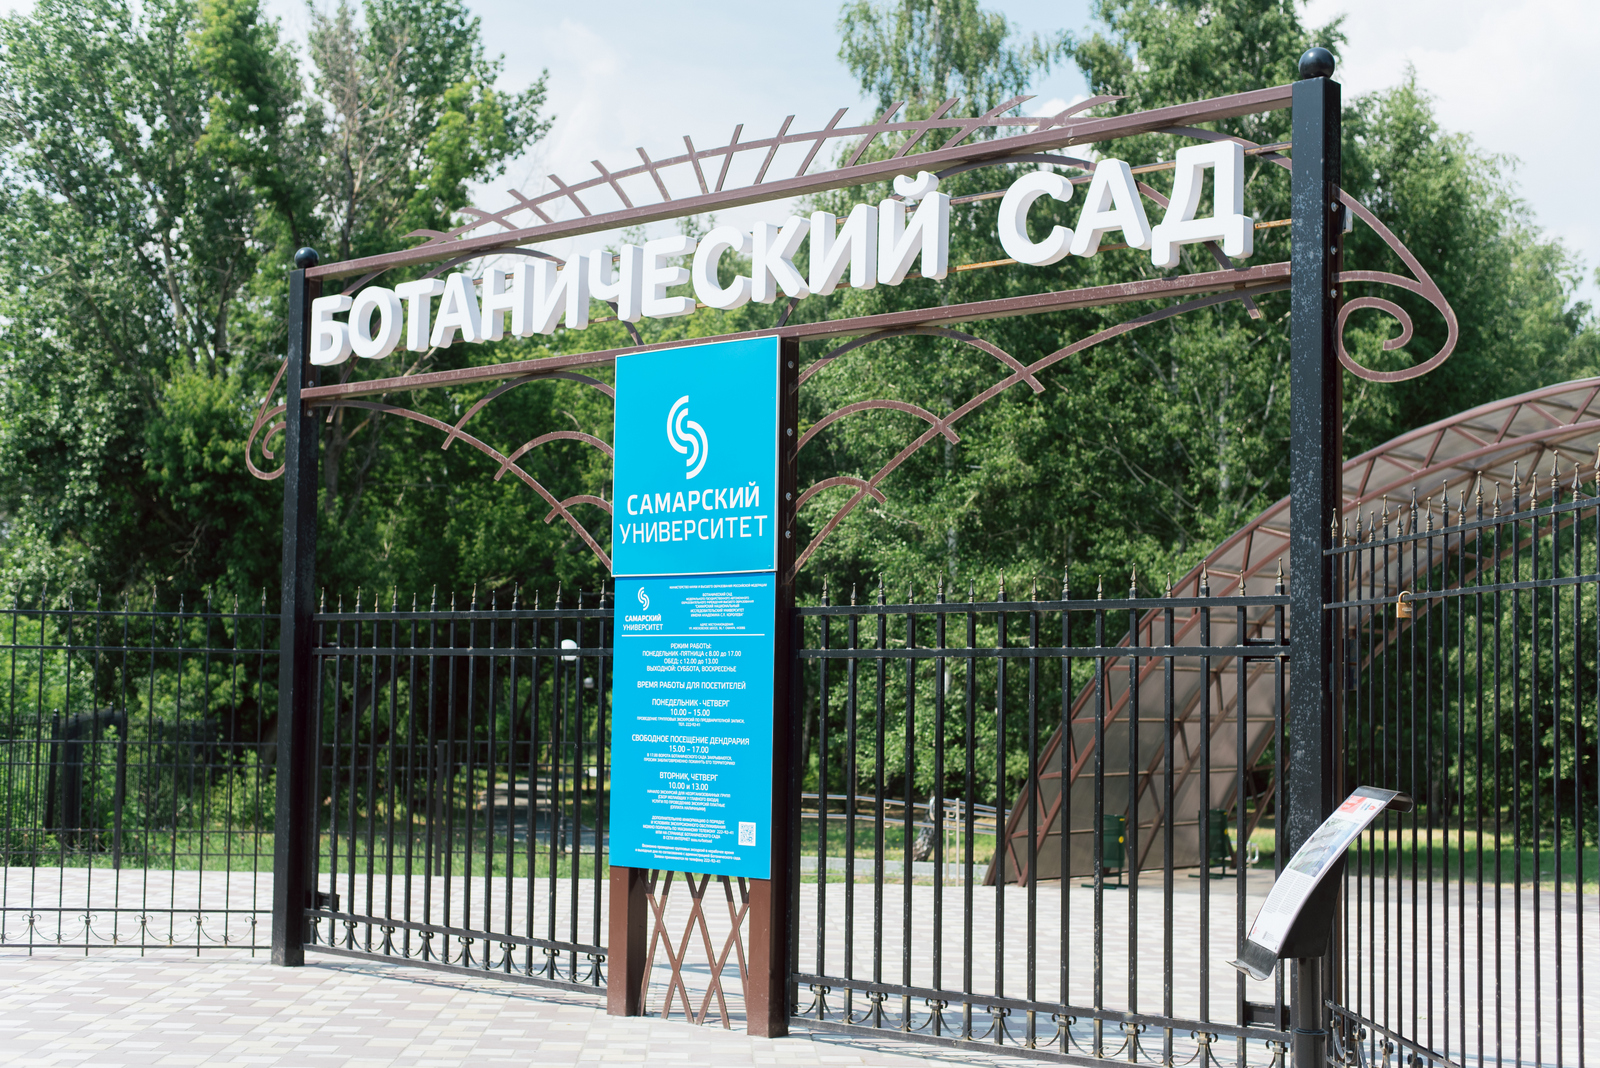 Ботанический сад ростова-на-дону — официальный сайт, прайс в 2021 году, фото, карта, как проехать на туристер.ру